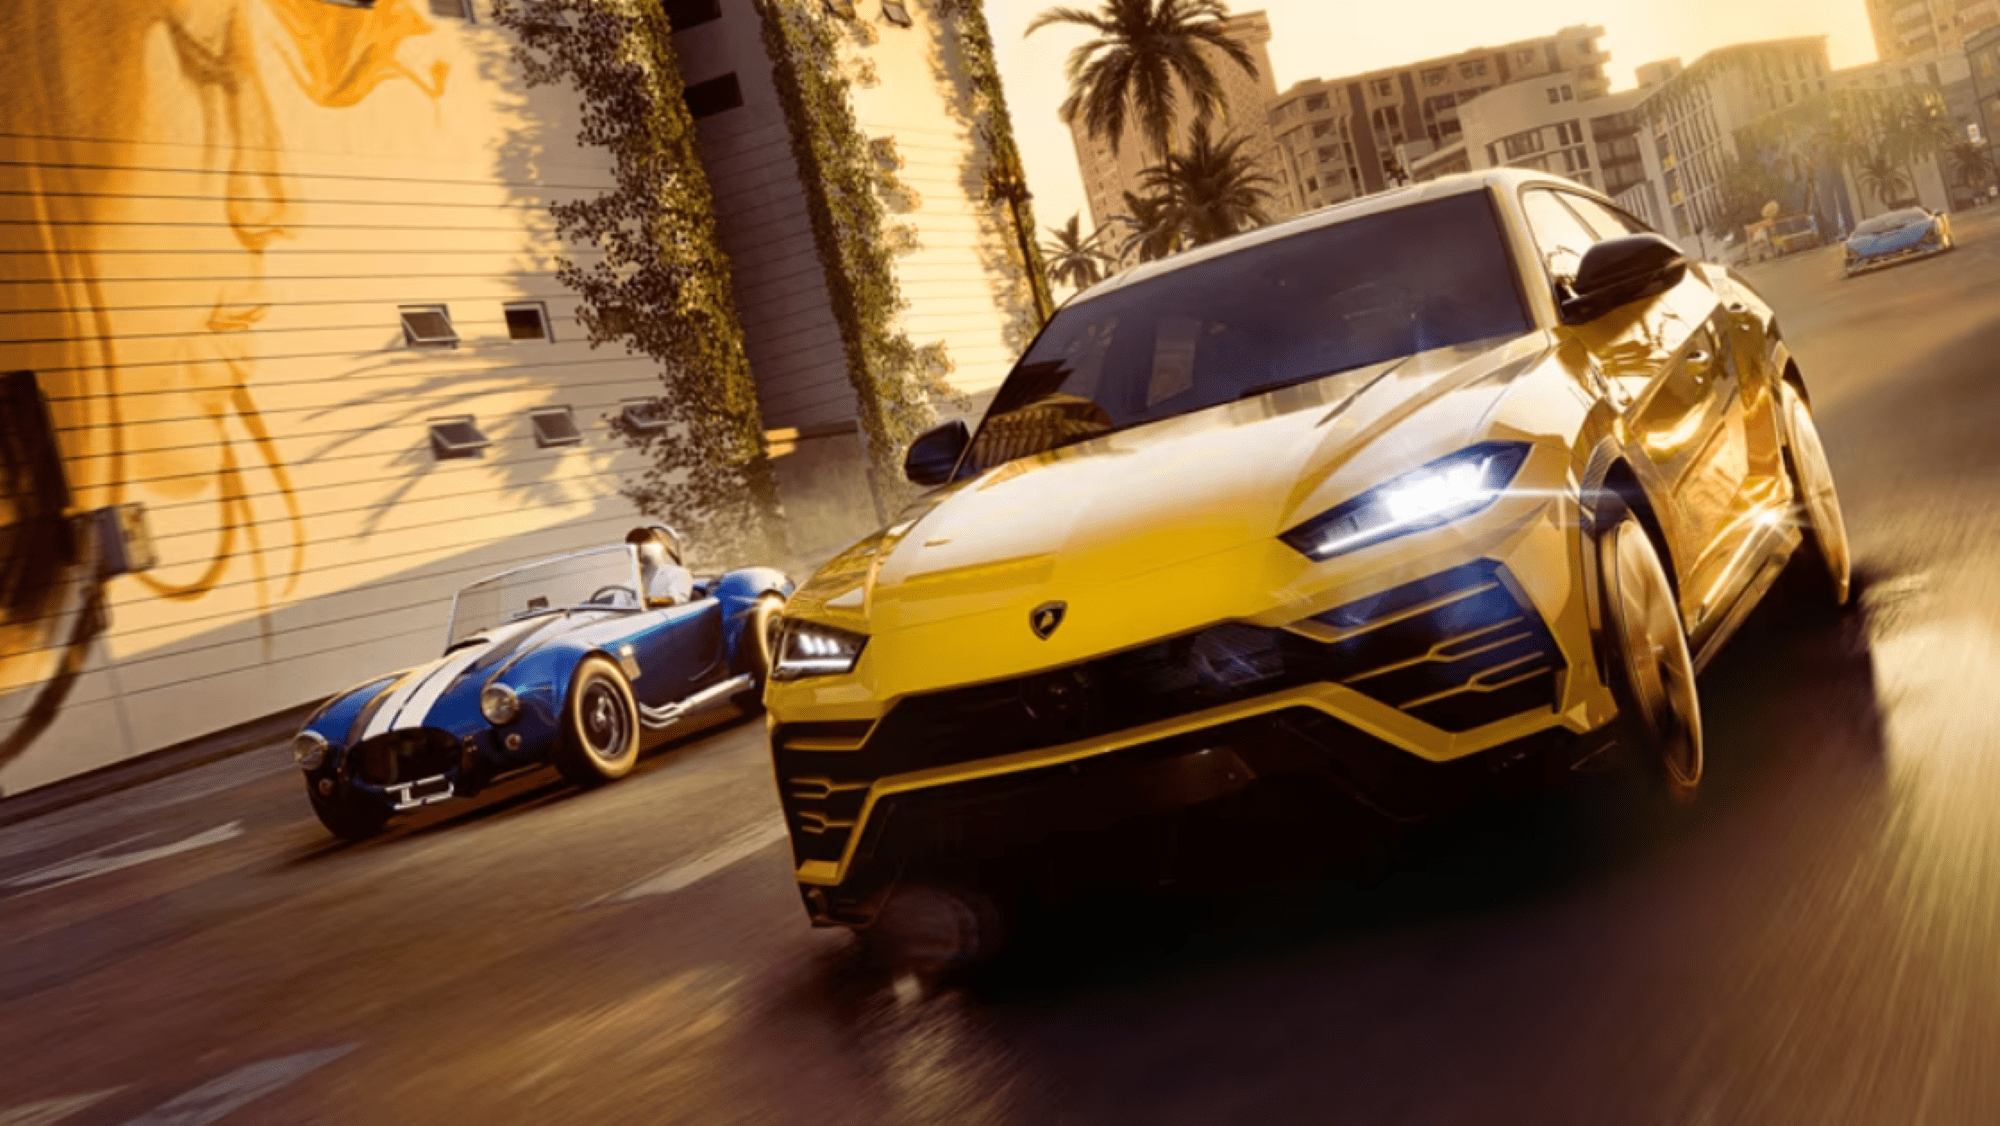 Ubisoft anuncia novo jogo de corrida com lançamento em 2023: The Crew  Motorfest